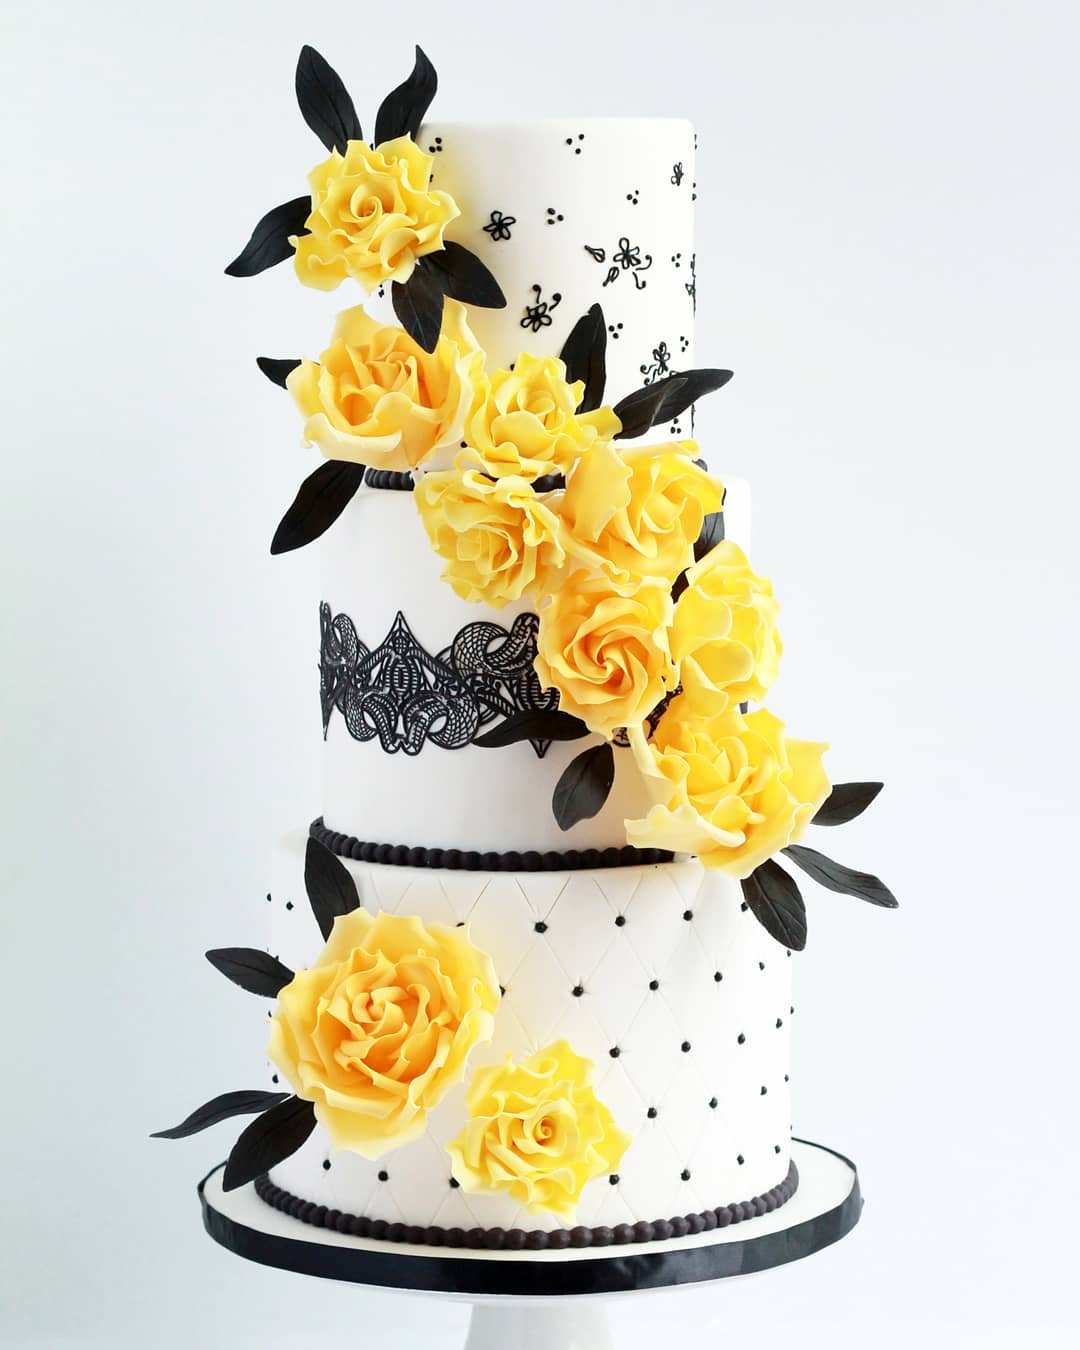 fall wedding cakes ideas white and orange wedding cakes